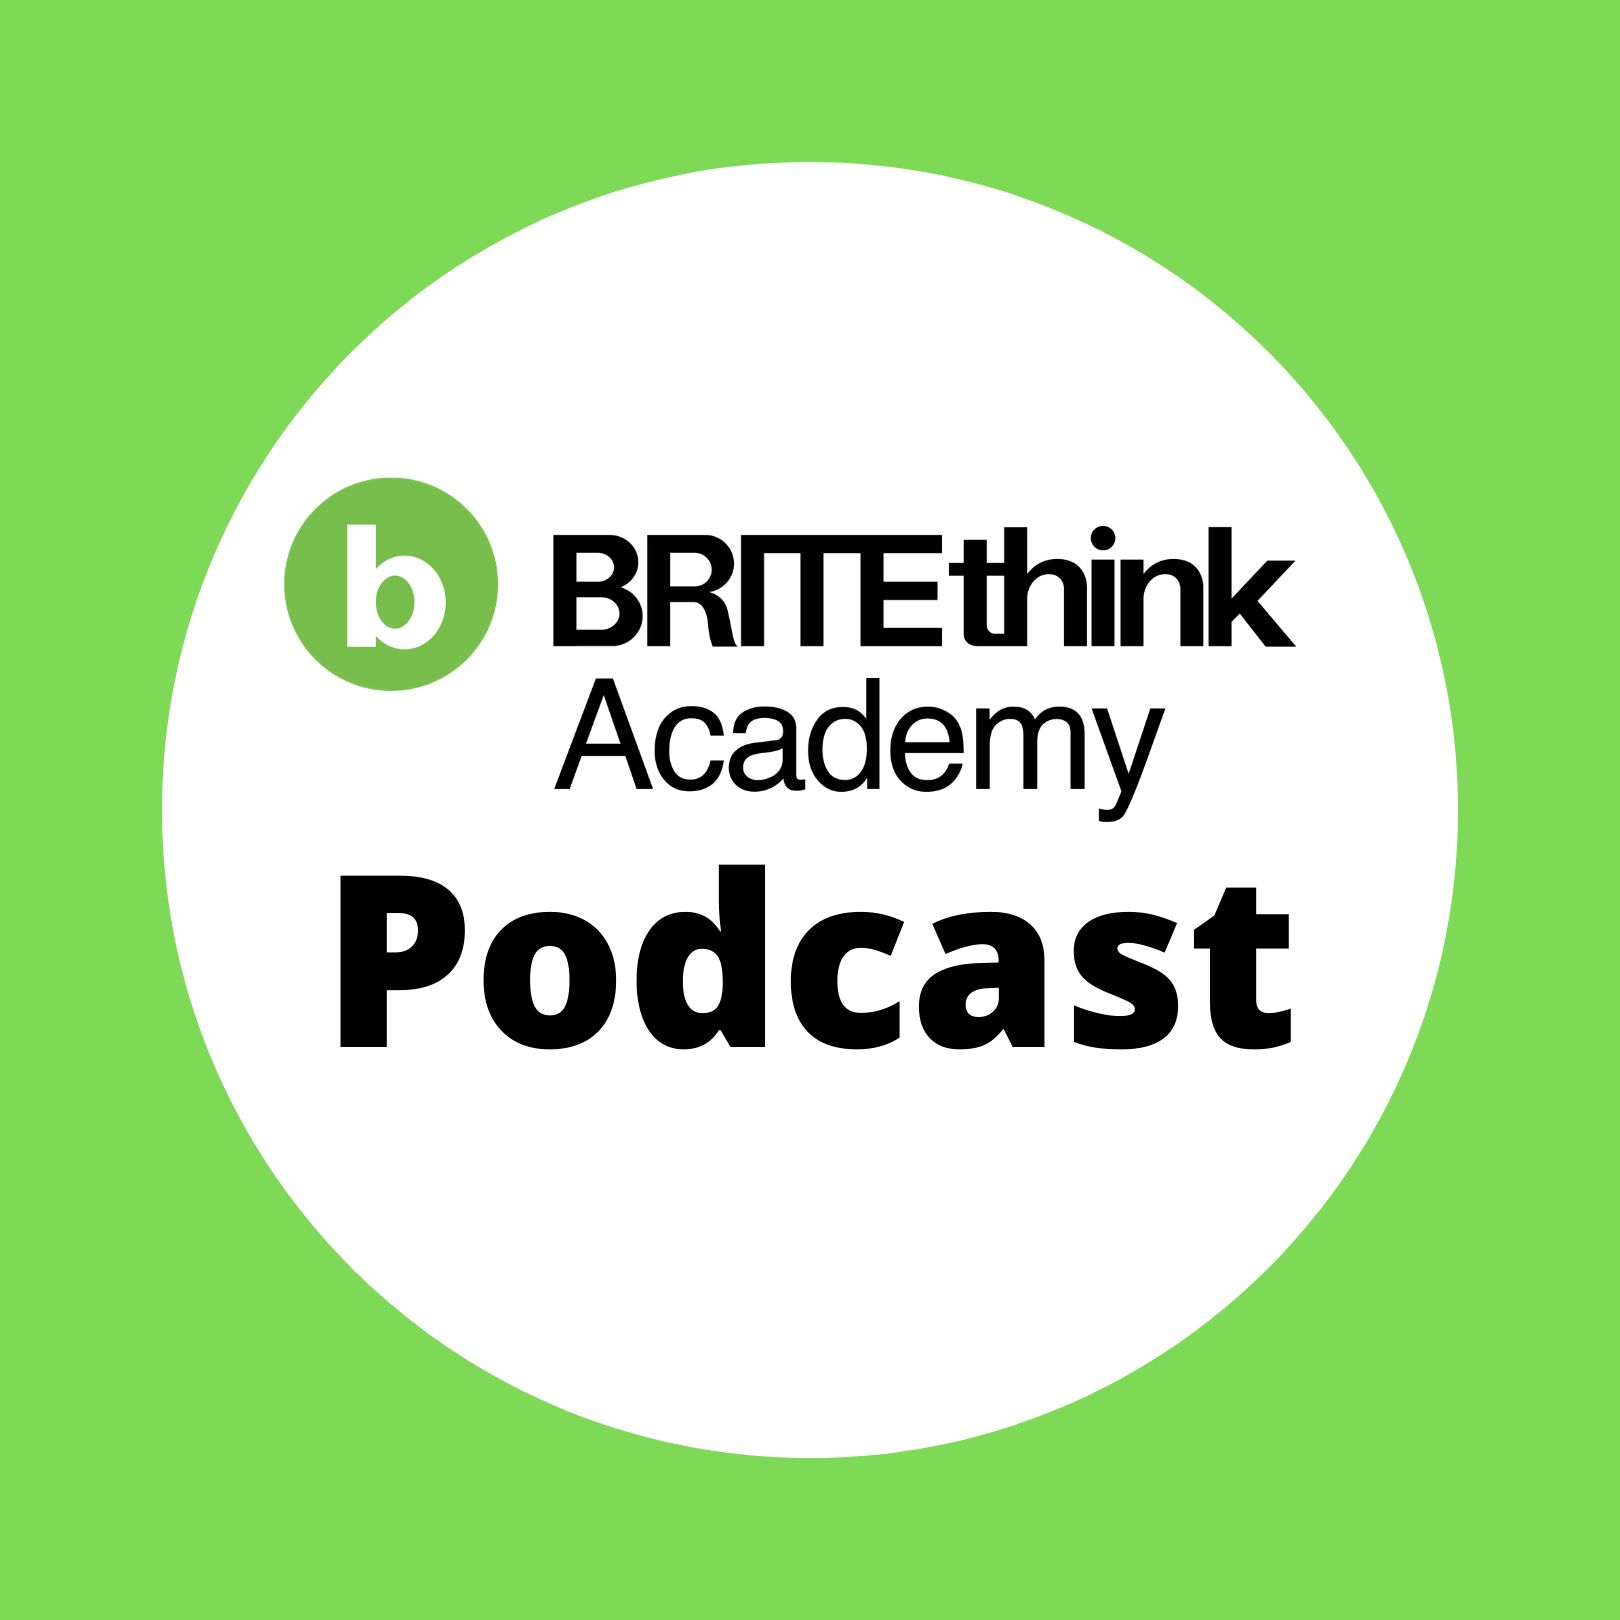 BRITEthink Academy